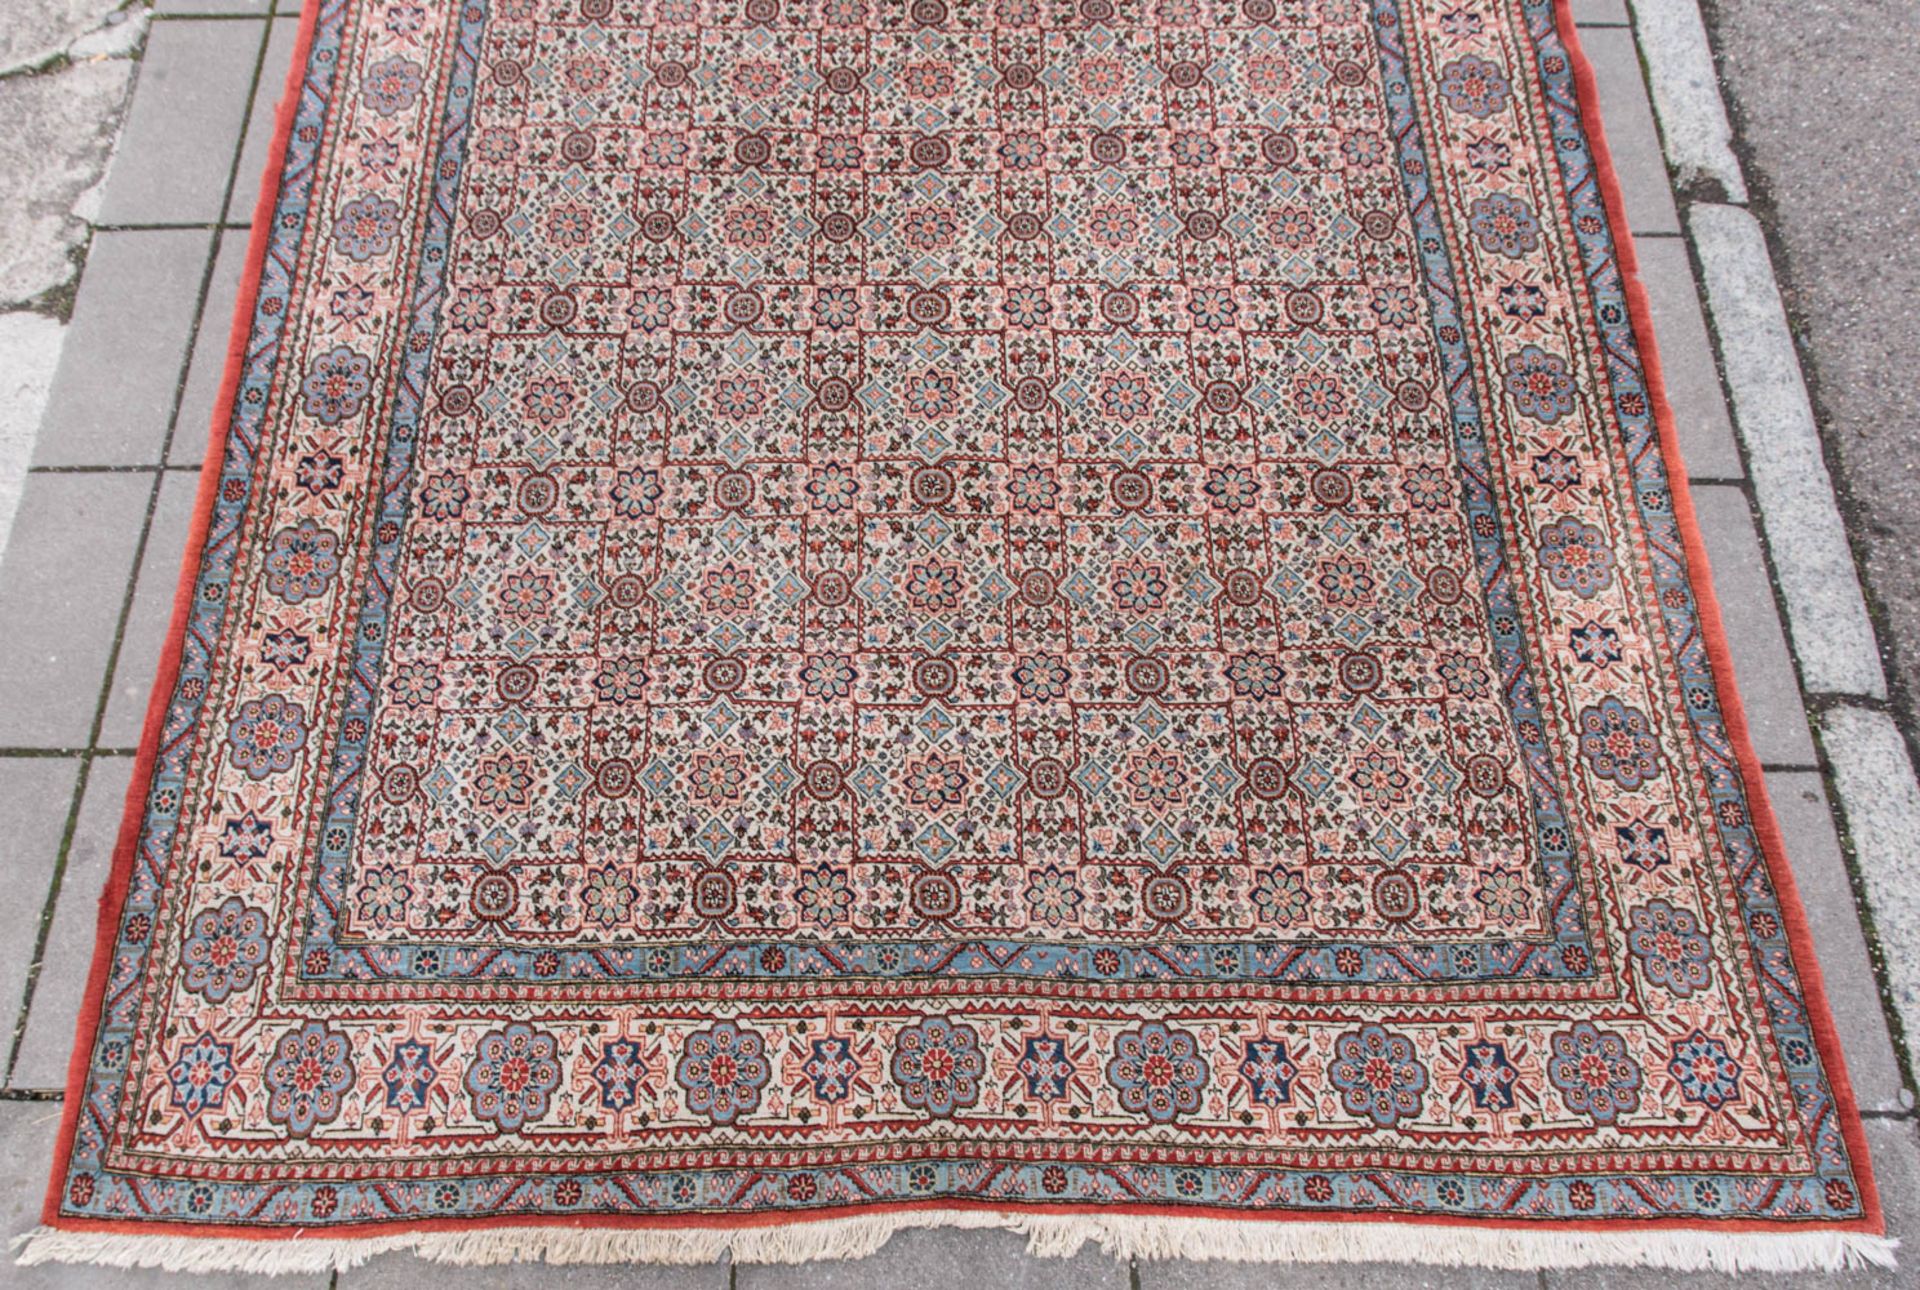 Großer Teppich in rot und blau, Baumwolle.360 x 337 cm - Bild 2 aus 8